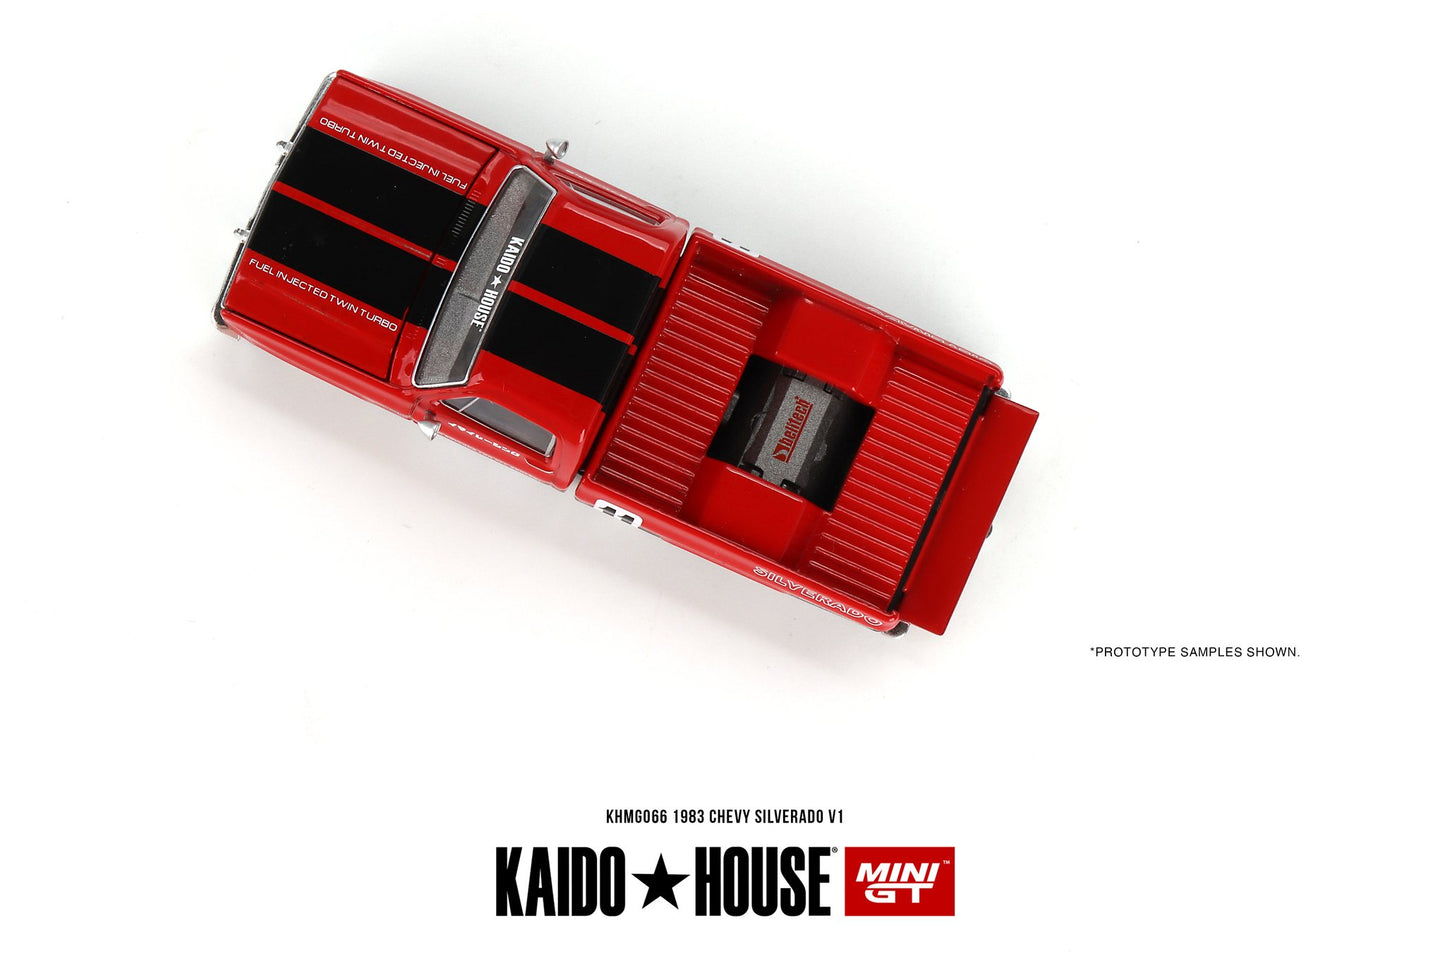 Mini GT x Kaido★House 1/64 1983 Chevy Silverado V1